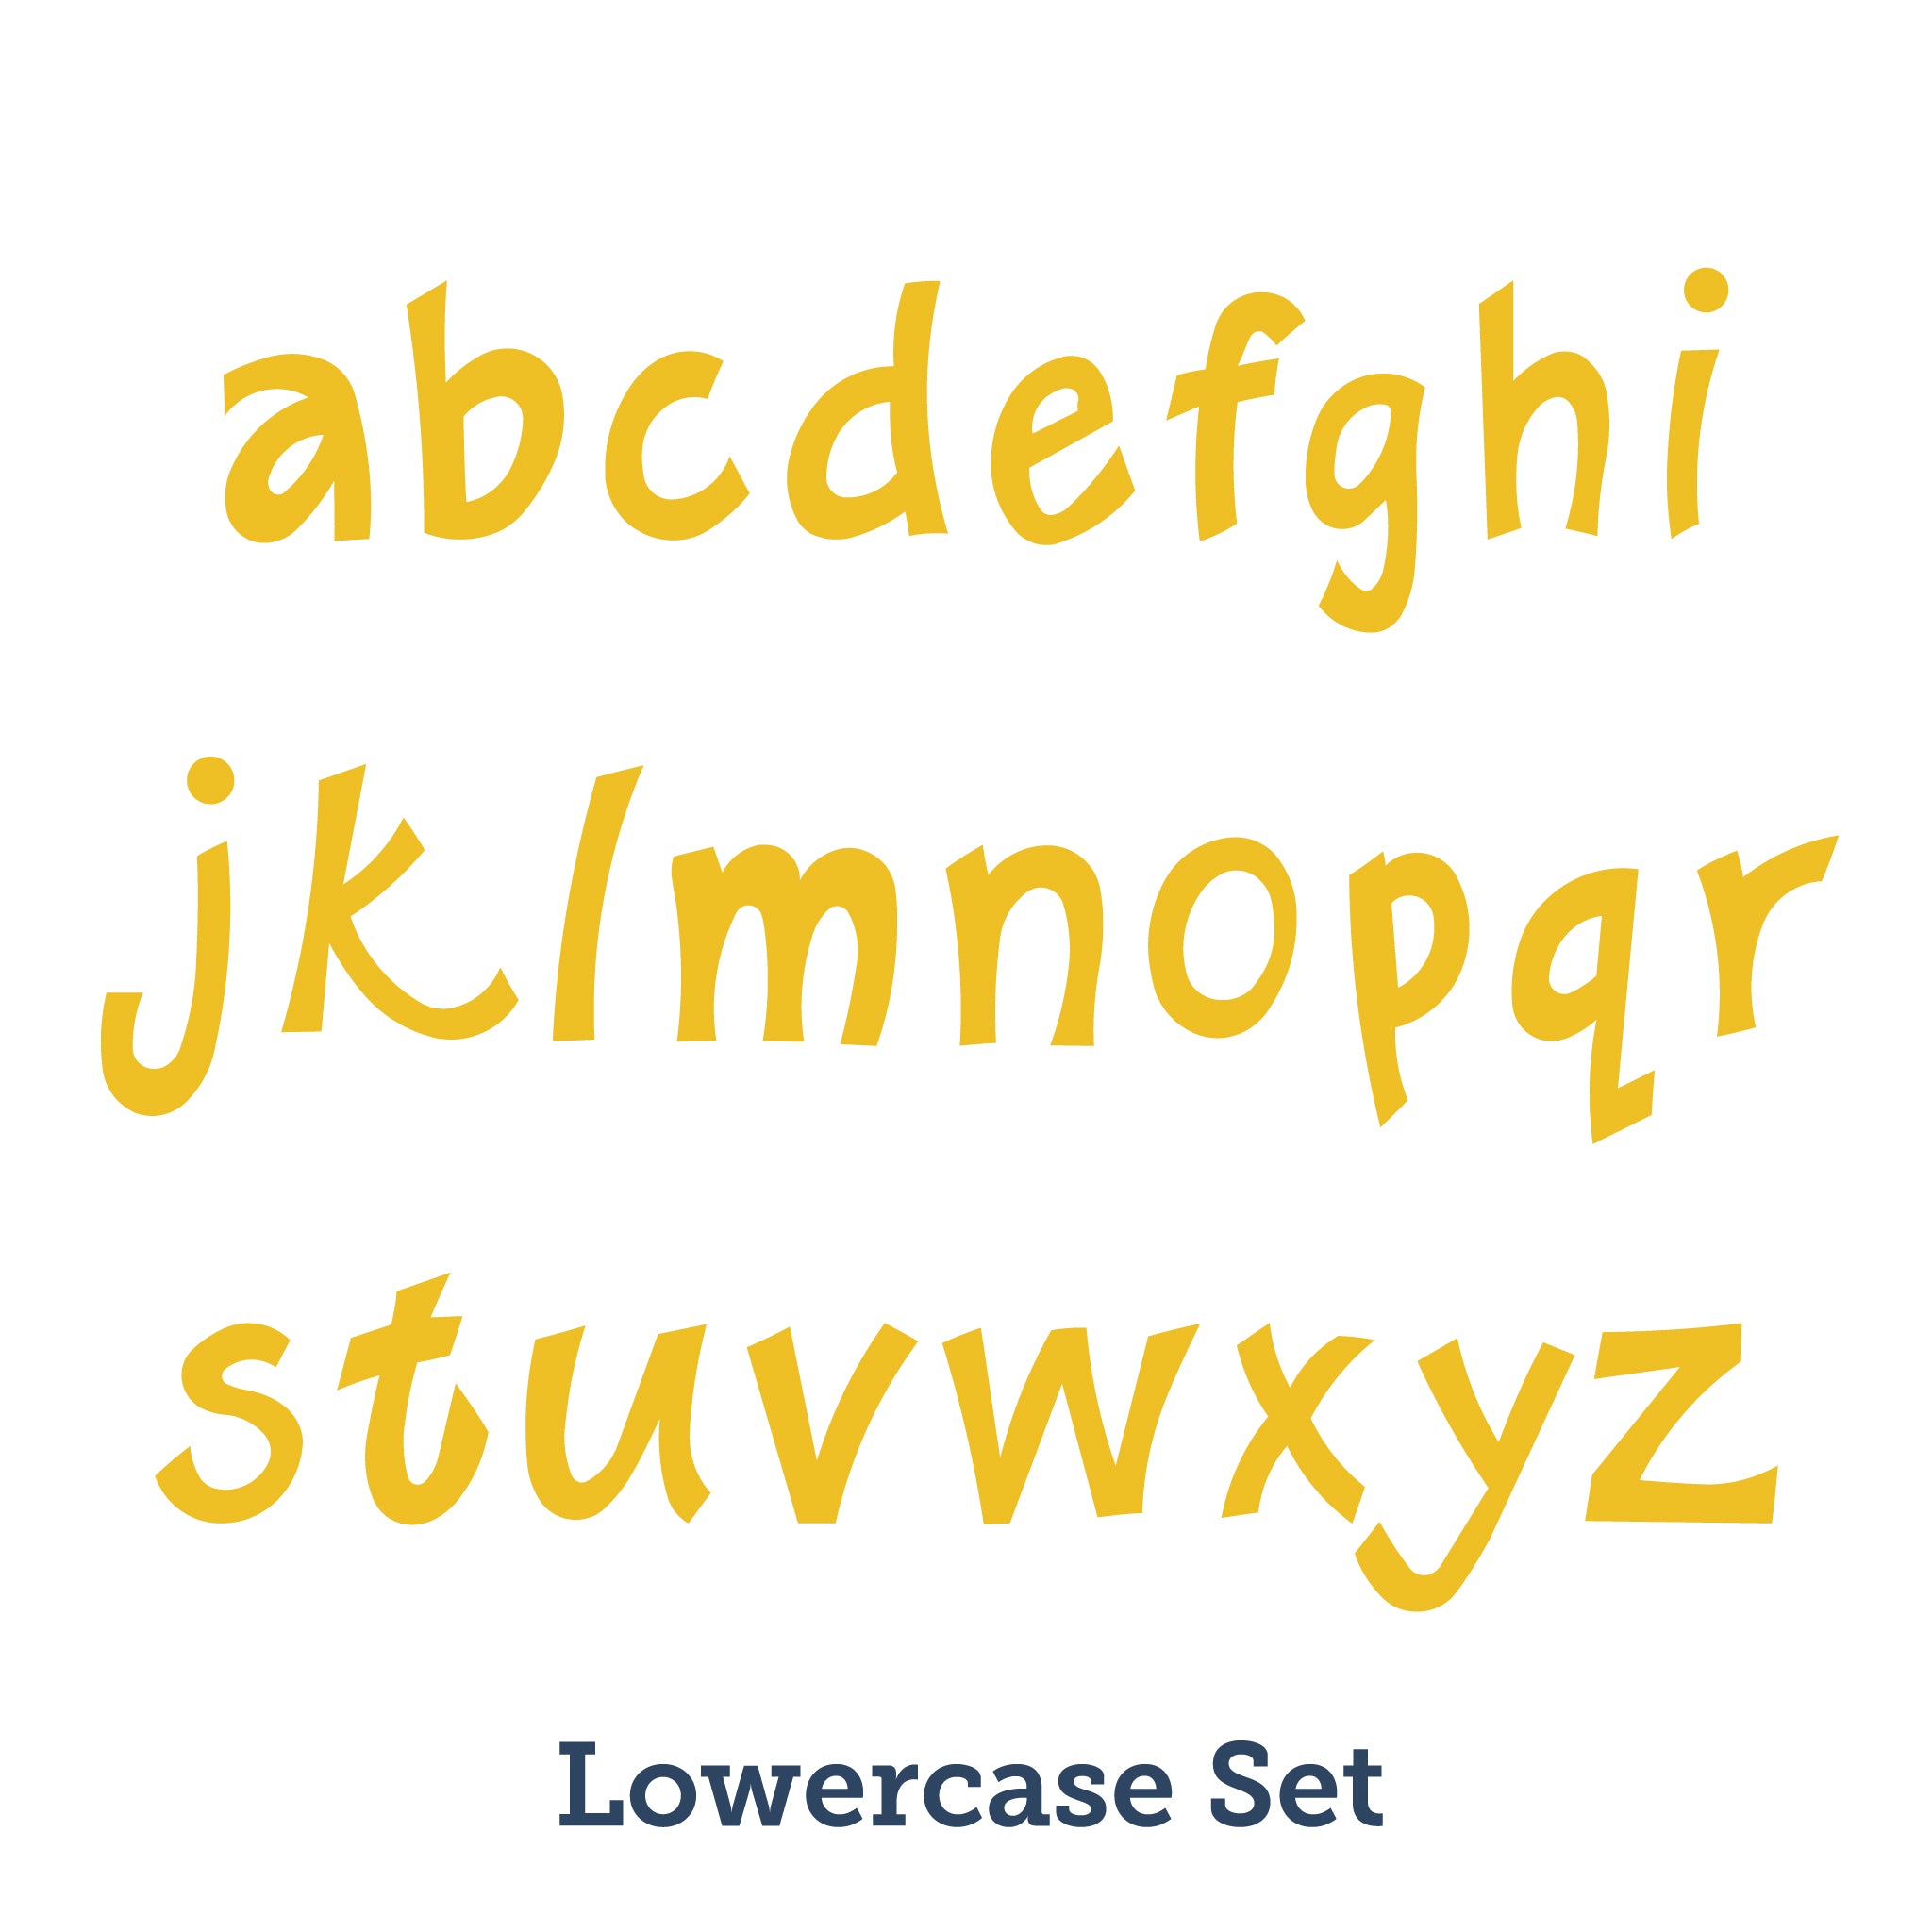 Creative 3d Alphabet Letters Scrapbook Letters Stock Illustration  2295229263